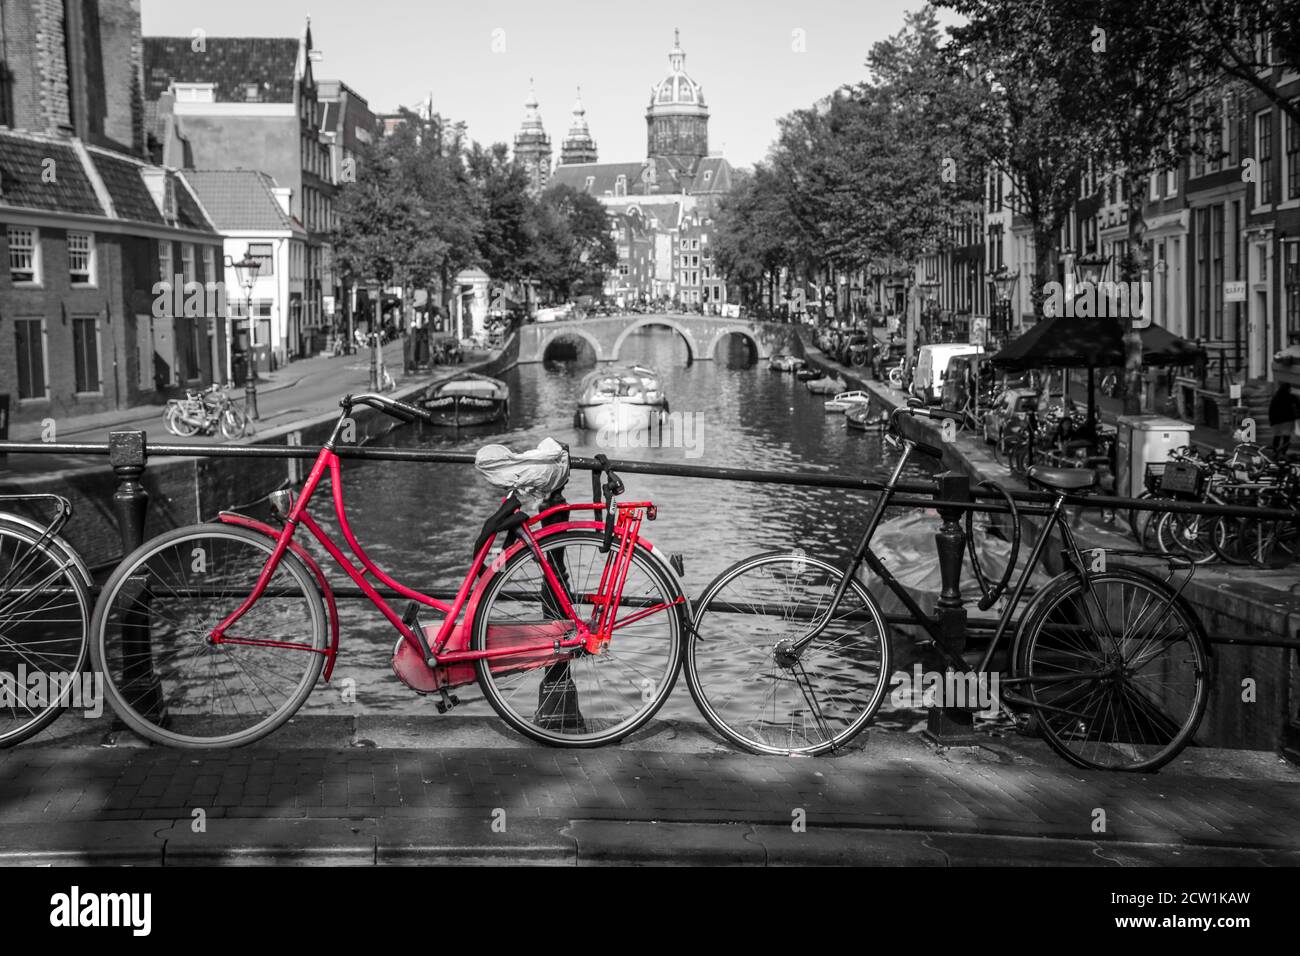 Ein Bild von einem roten Fahrrad auf der Brücke über den Kanal in Amsterdam.  Der Hintergrund ist schwarz-weiß Stockfotografie - Alamy